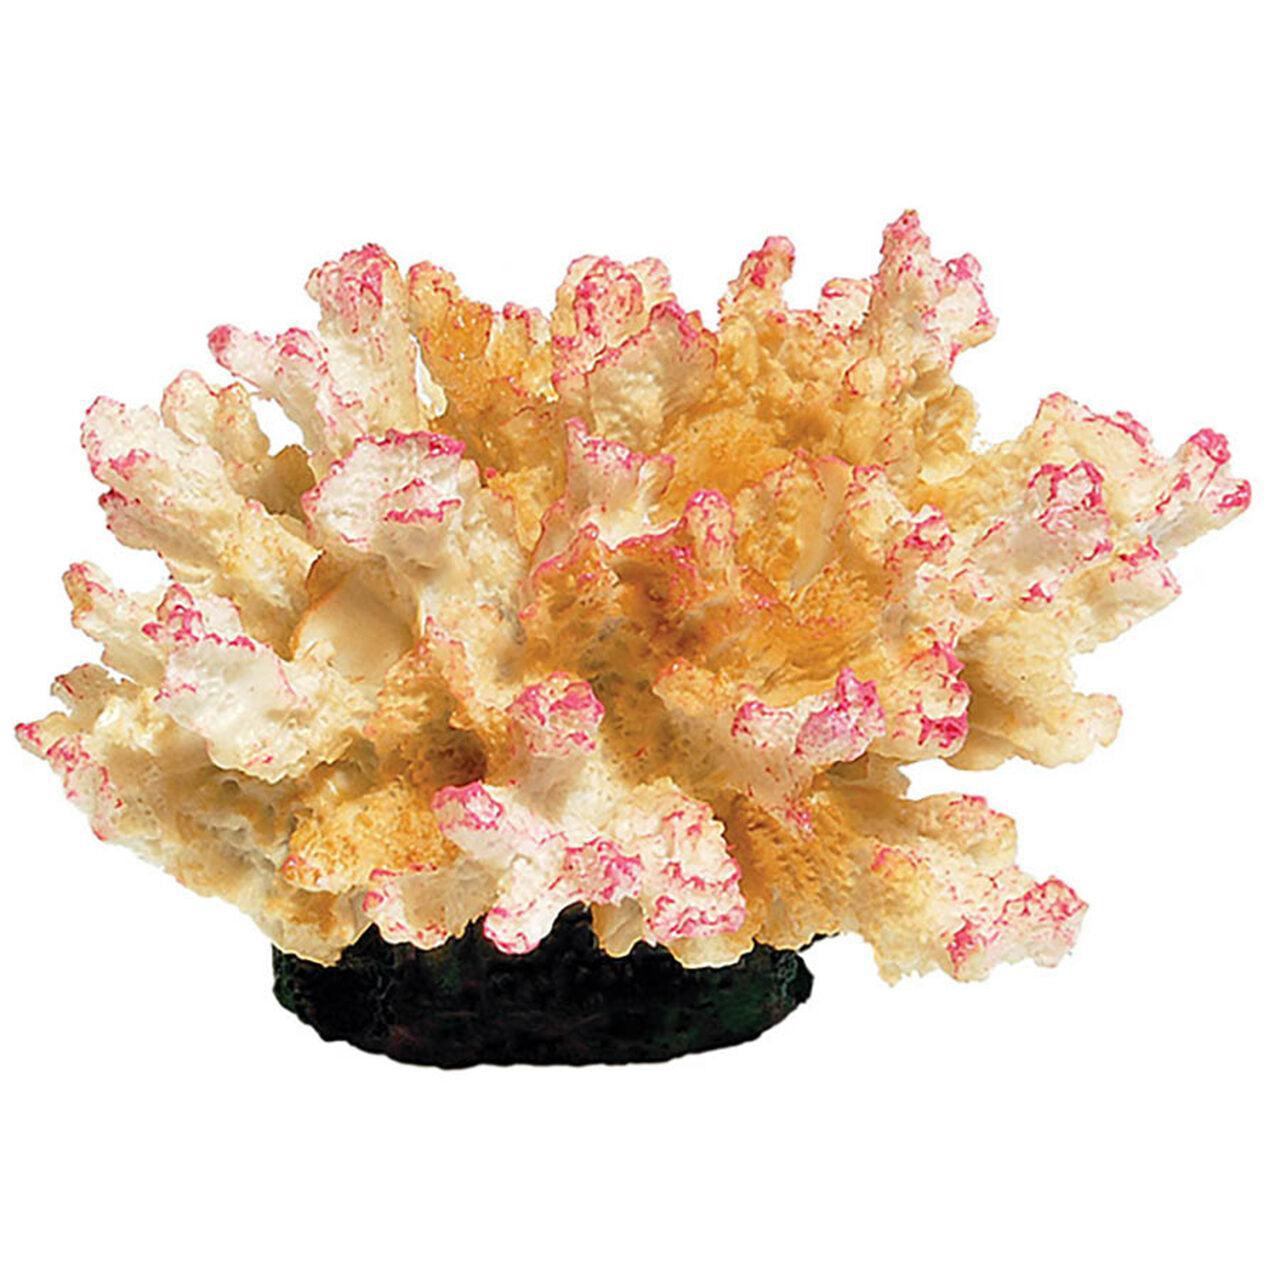 AquaSpectra Coral